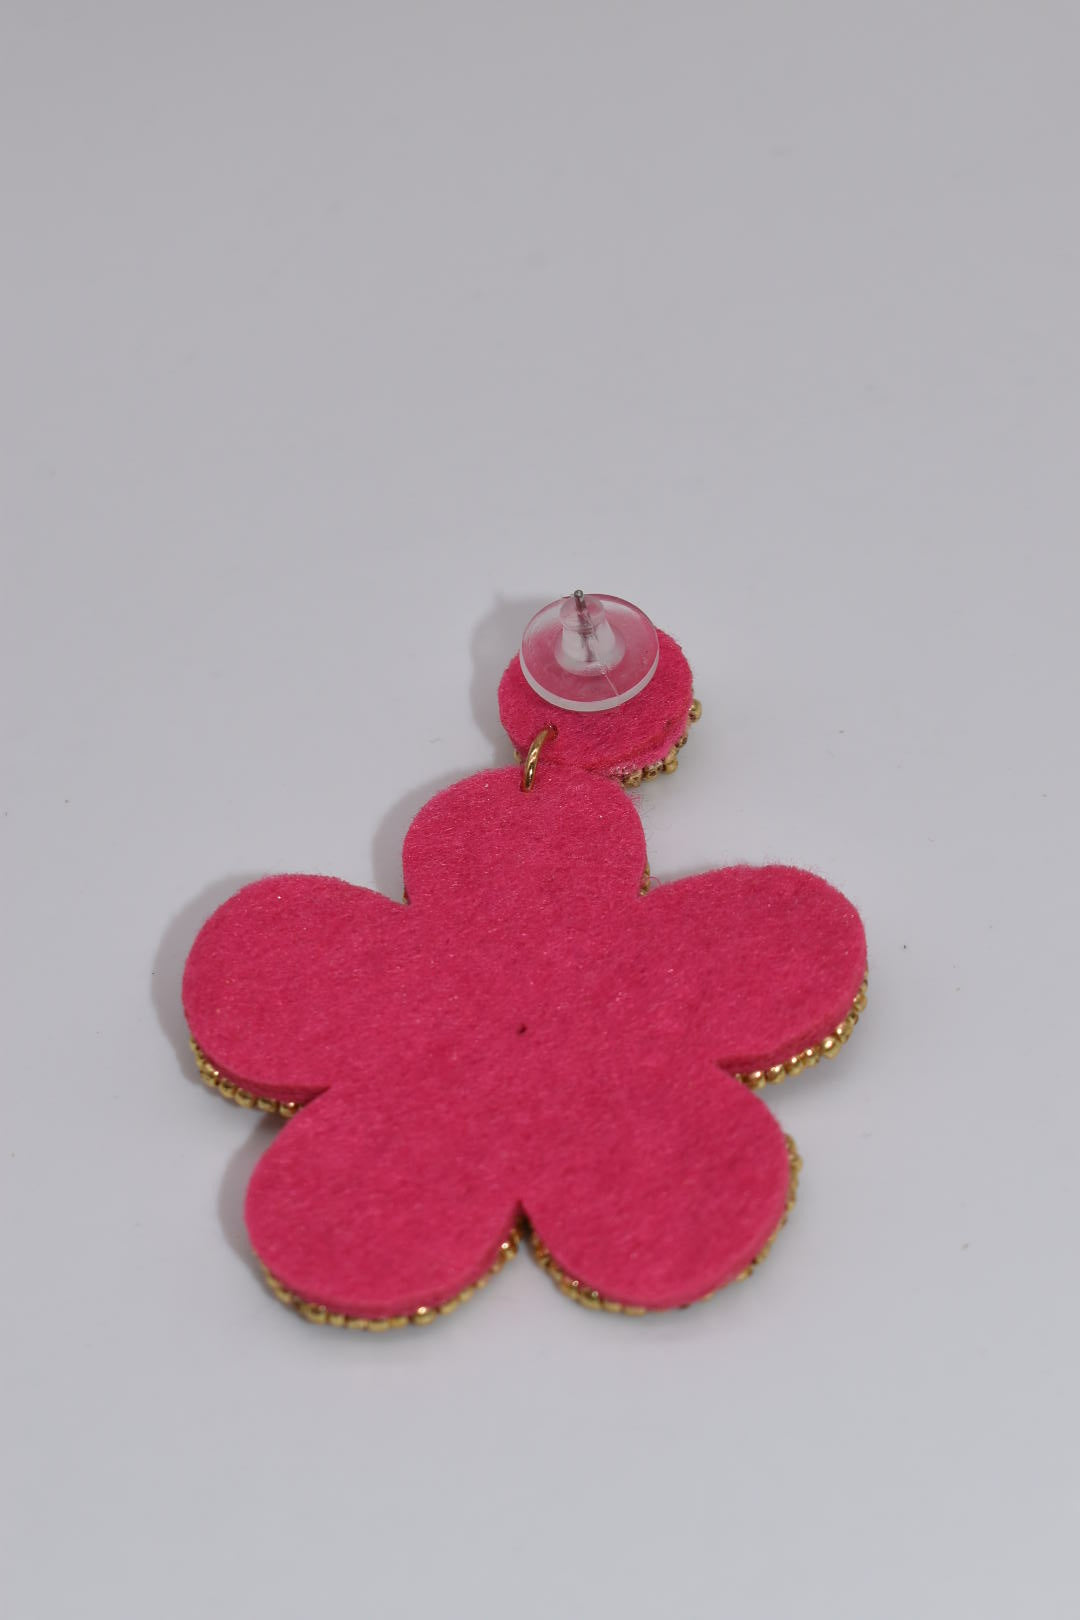 Statement Earrings: "Pink Petal Power" Beaded Drop Earrings